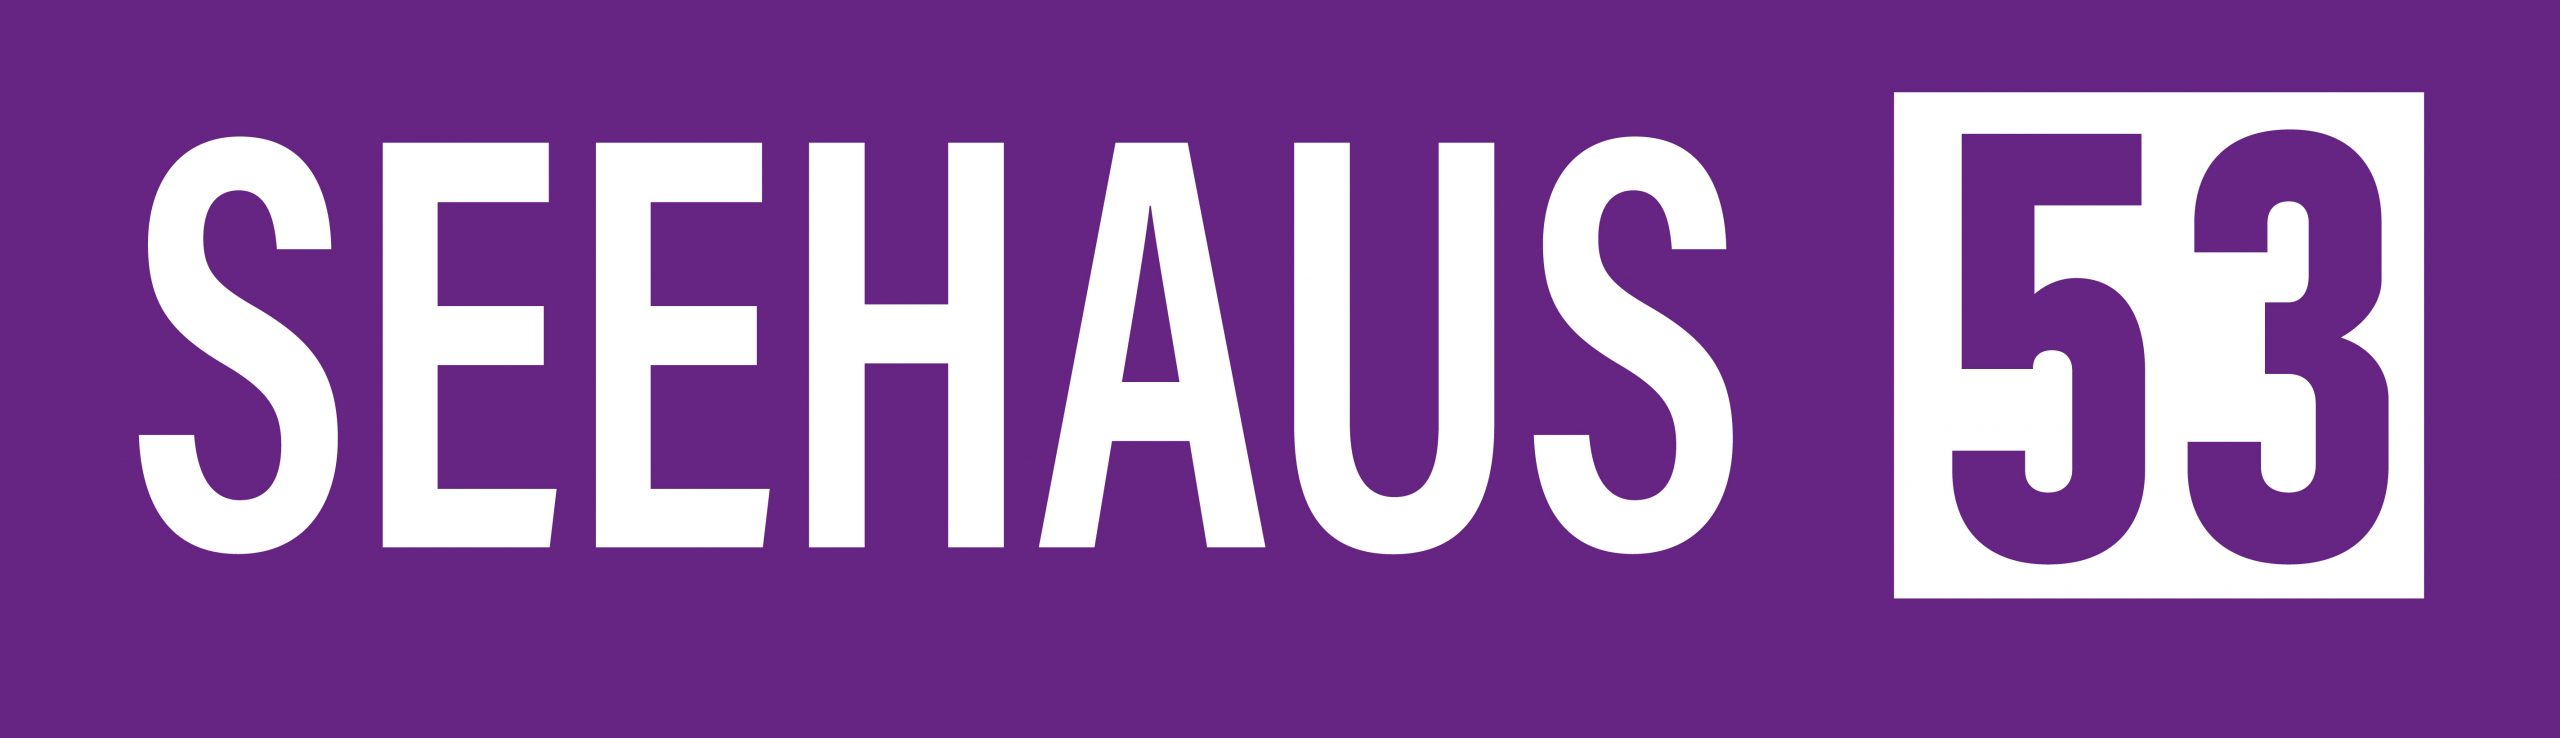 Logo Seehaus53